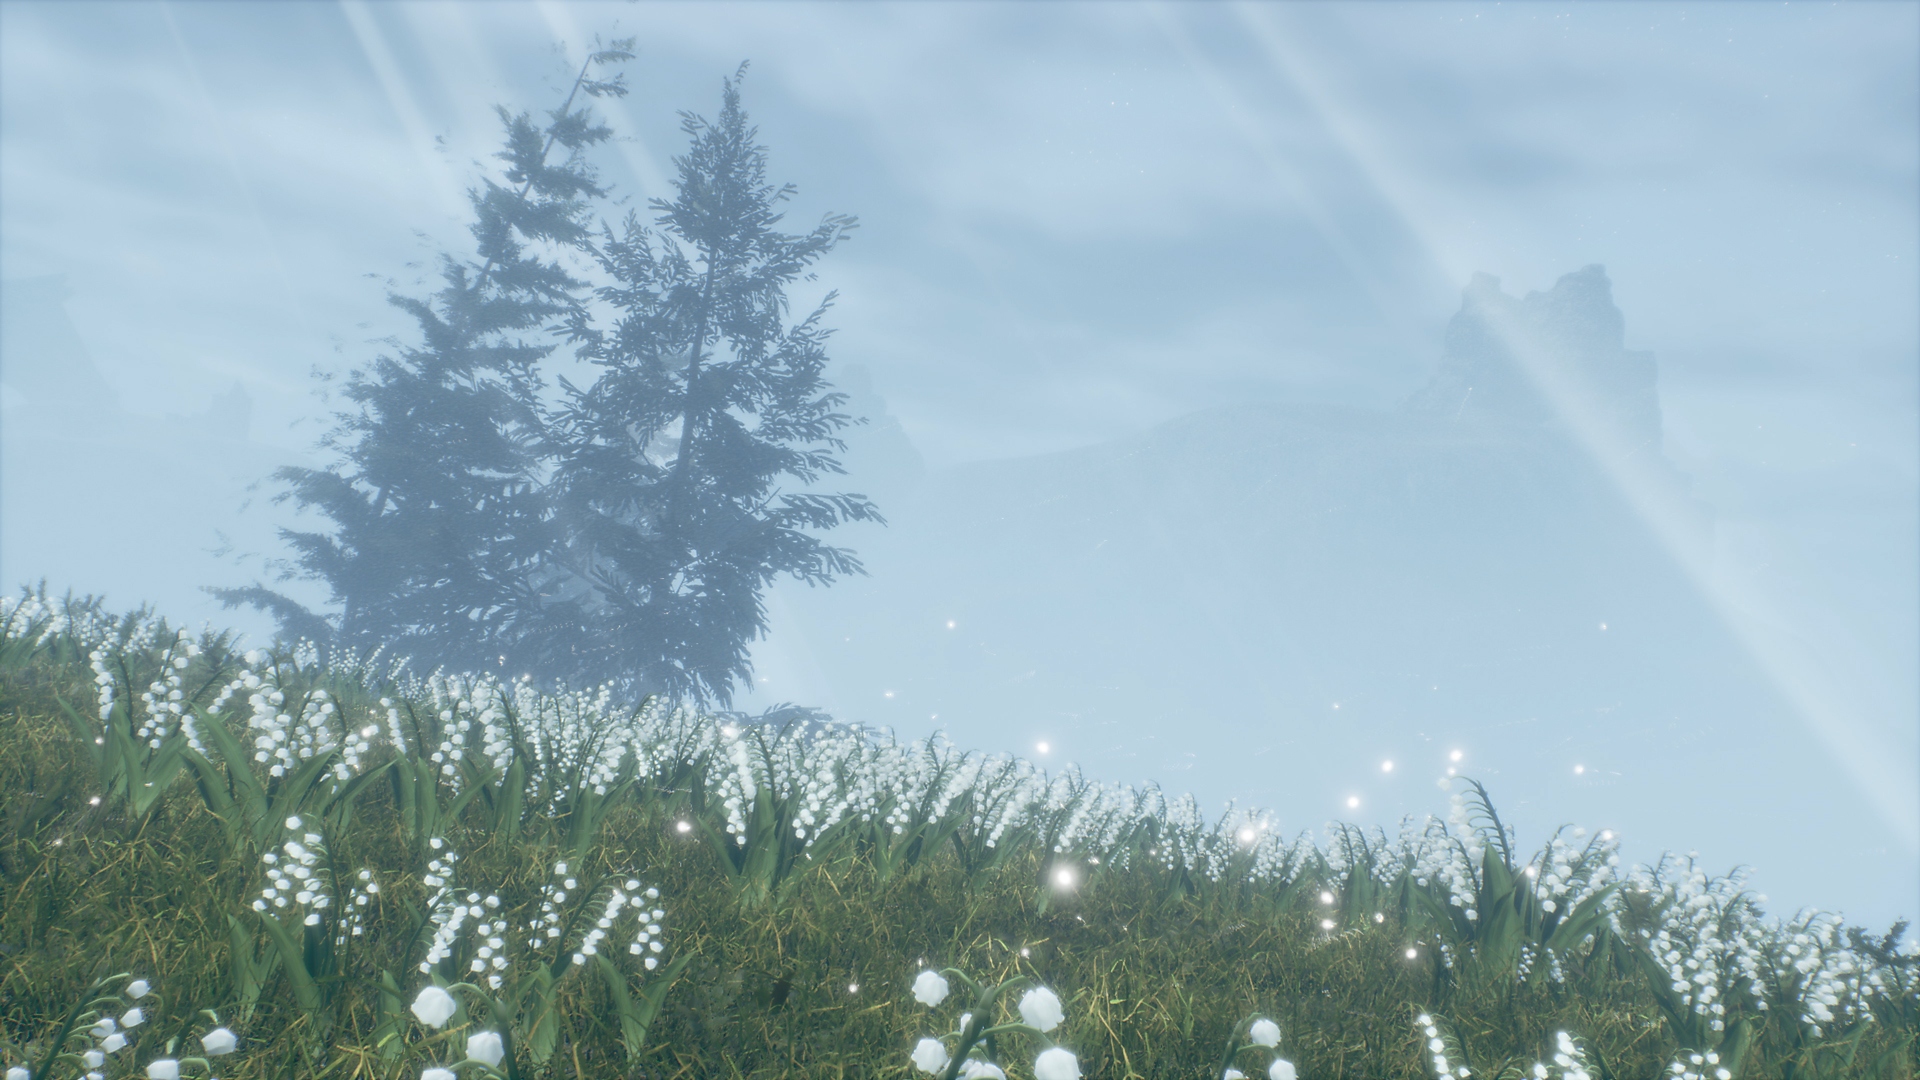 Valkyrie Elysium – kuvakaappaus kahdesta puusta ruohikkoisella alueella